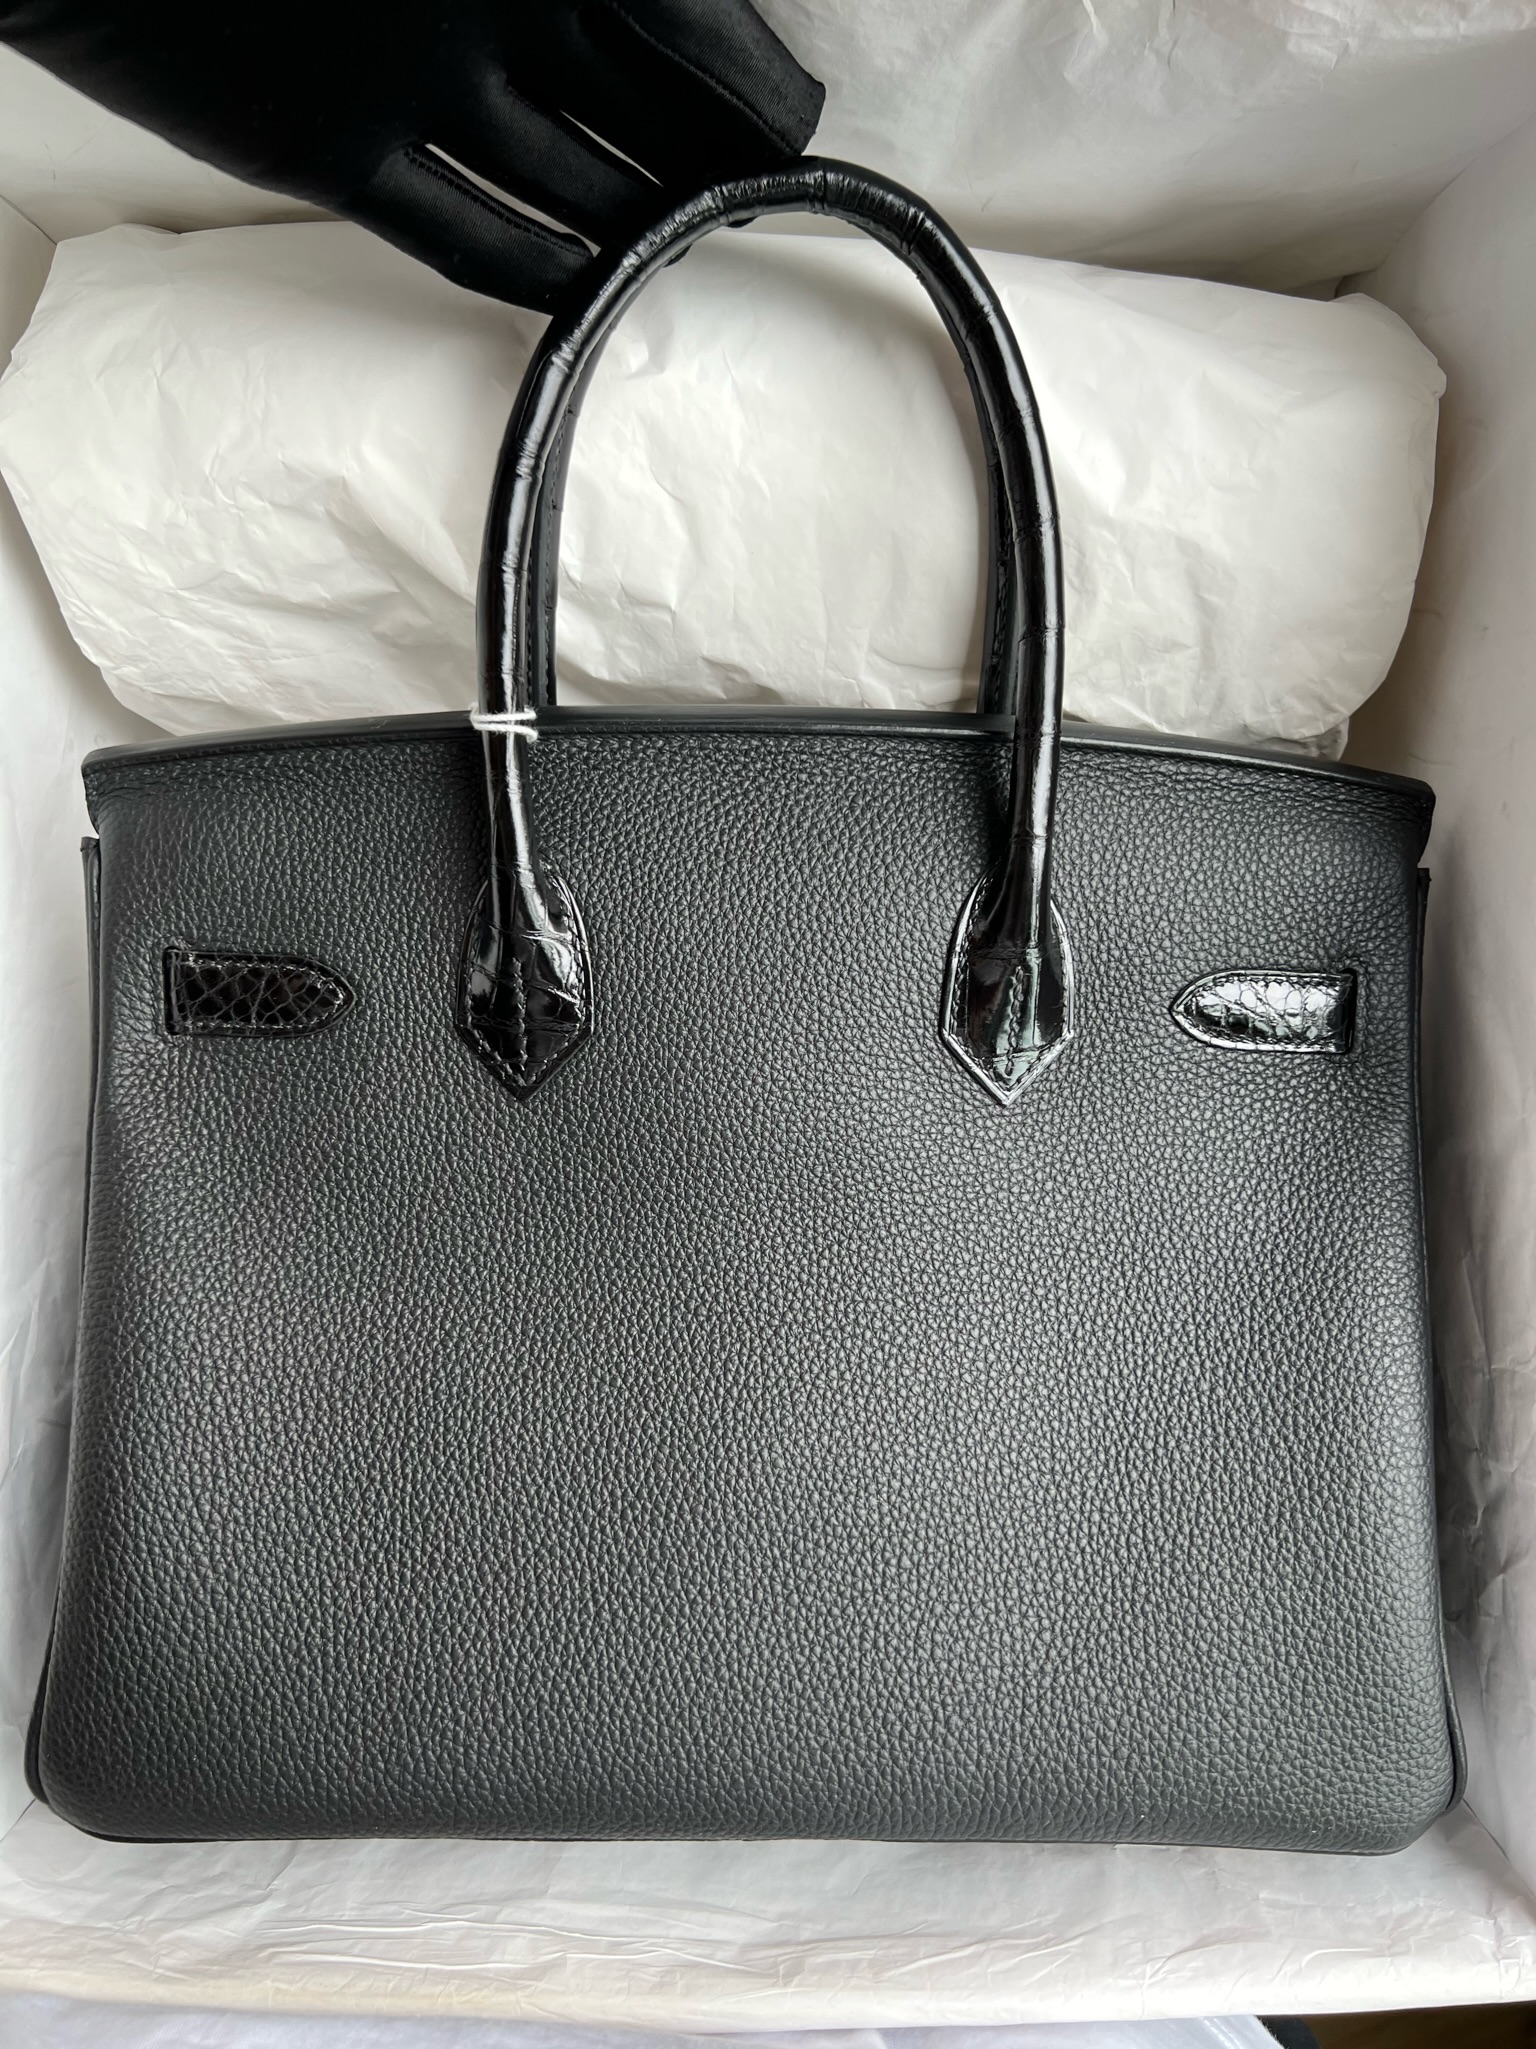 愛馬仕一個包包大概多少錢 Hermès Birkin 30 Touch Togo拼尼羅鱷魚 黑色玫瑰金扣